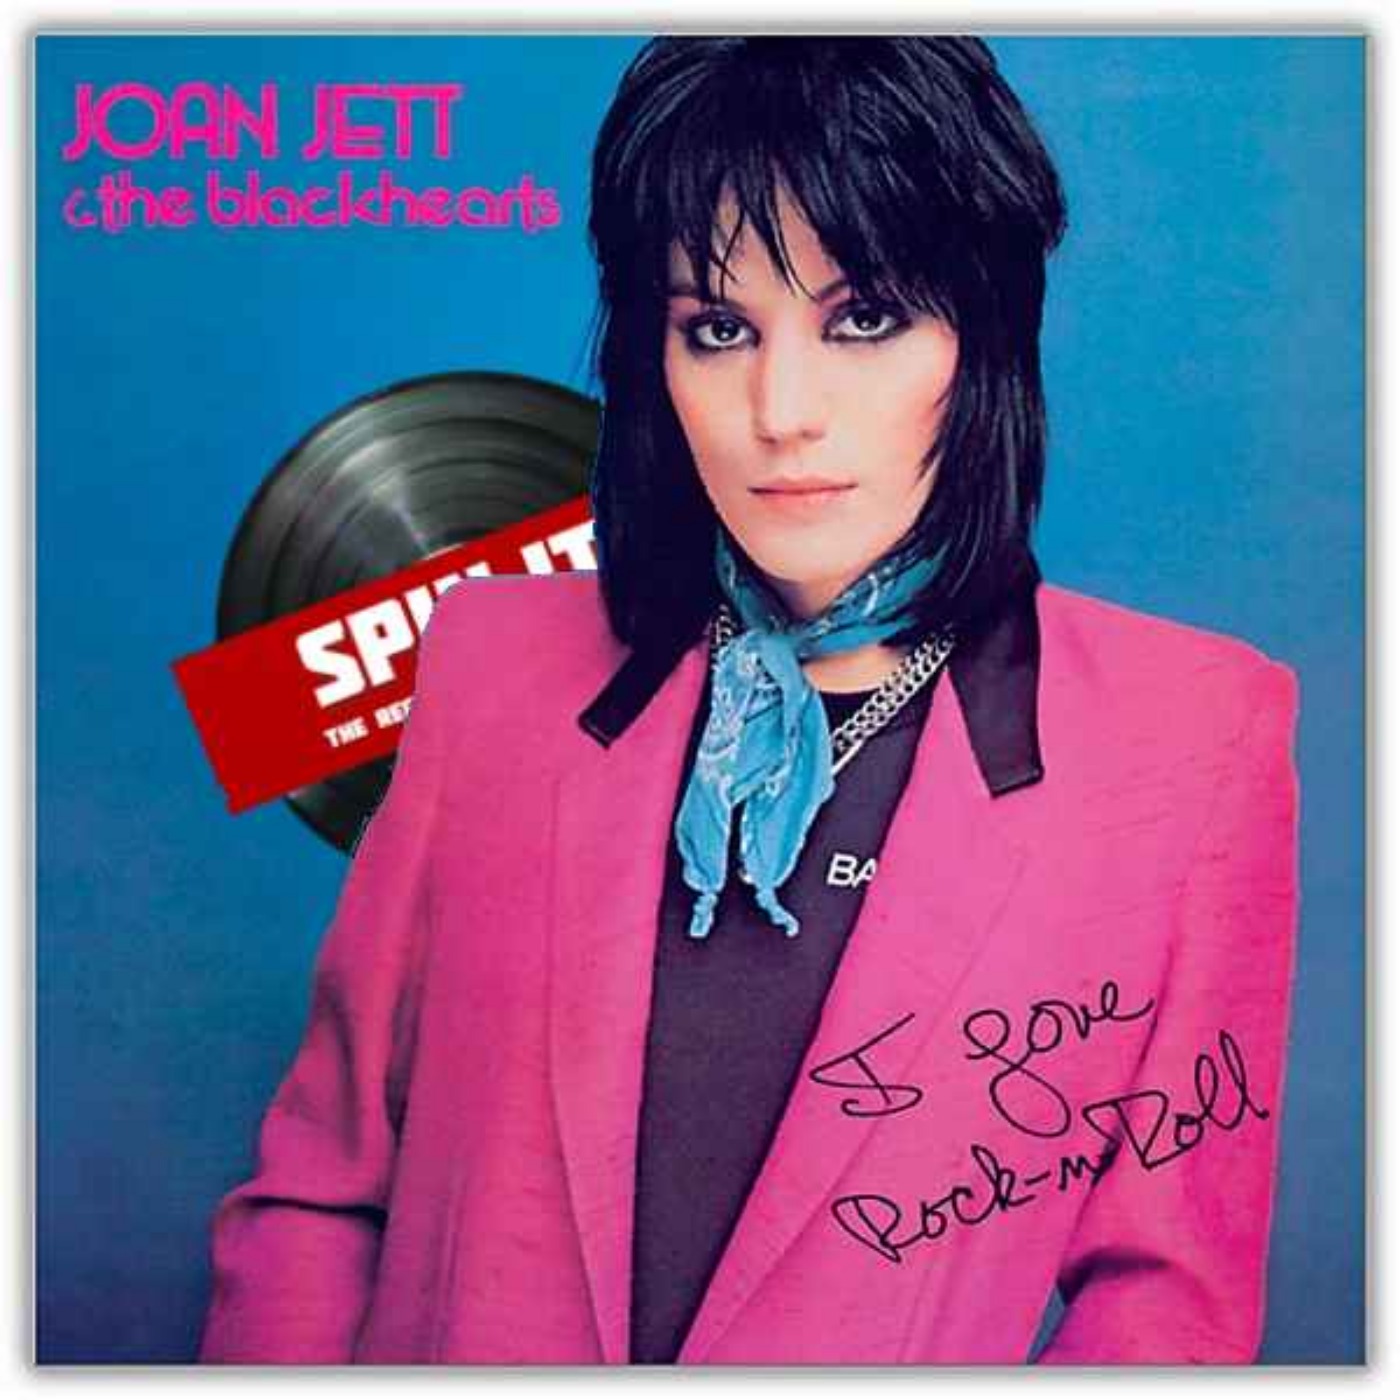 I Love Rock 'N' Roll - Joan Jett & The Blackhearts: Episode 11